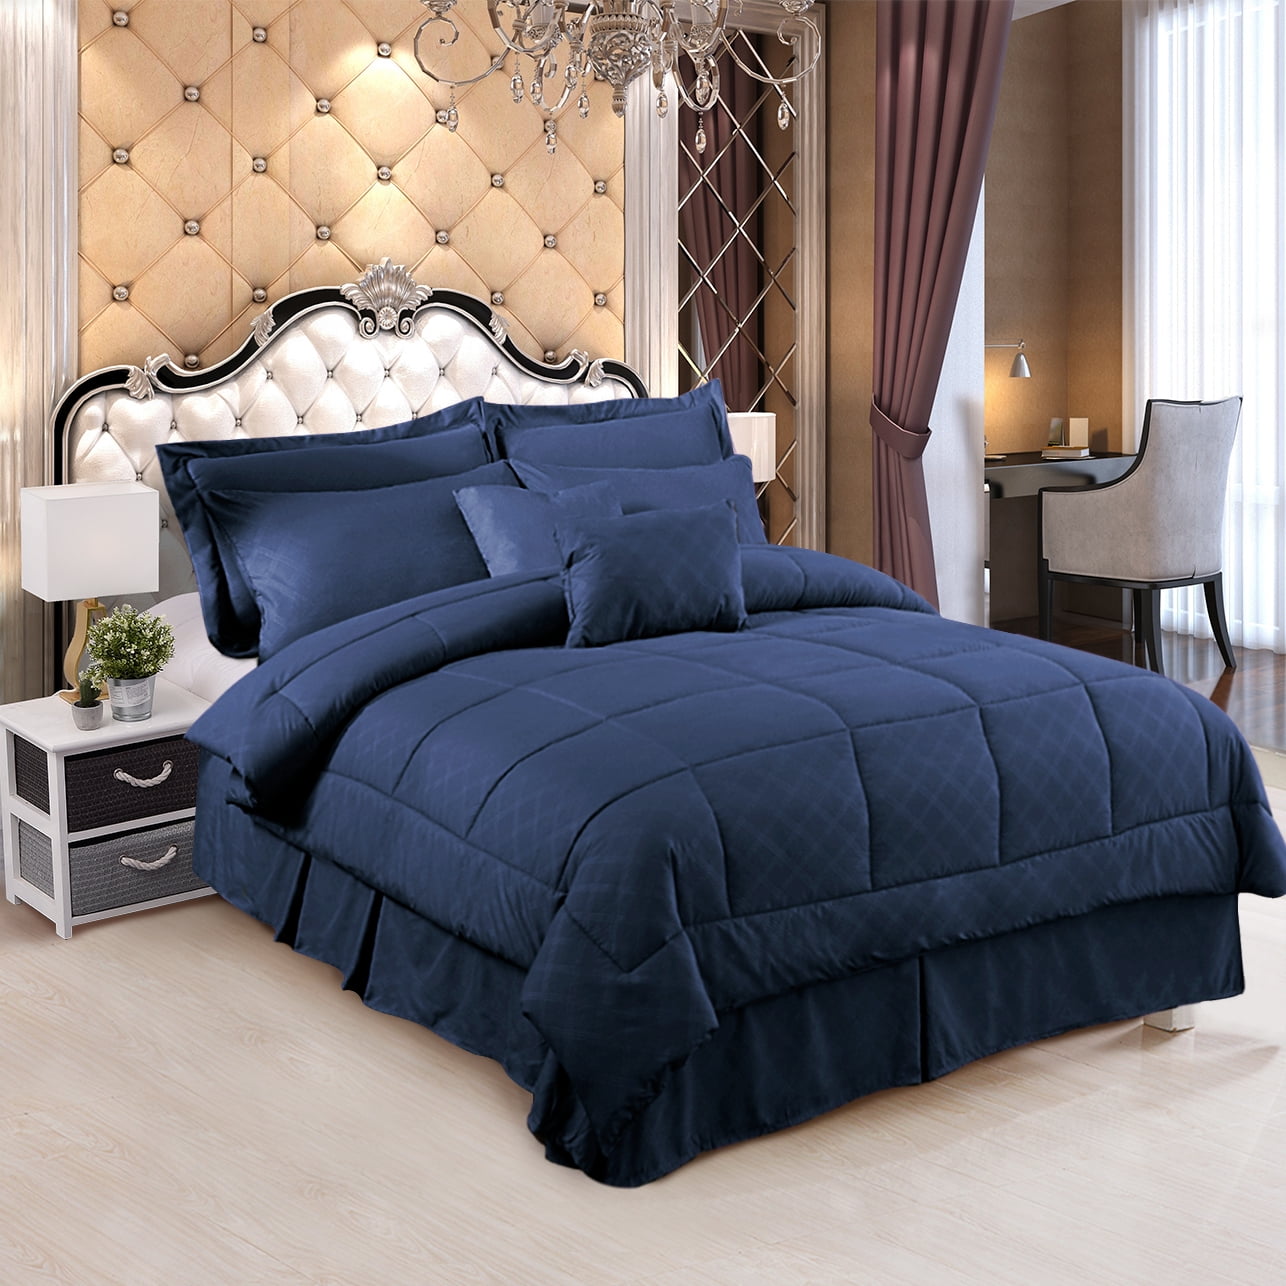 10-Piece Reversible Bed In A Bag Comforter & Sheet Set, Multiple Colors  Navy Queen, Queen - Kroger